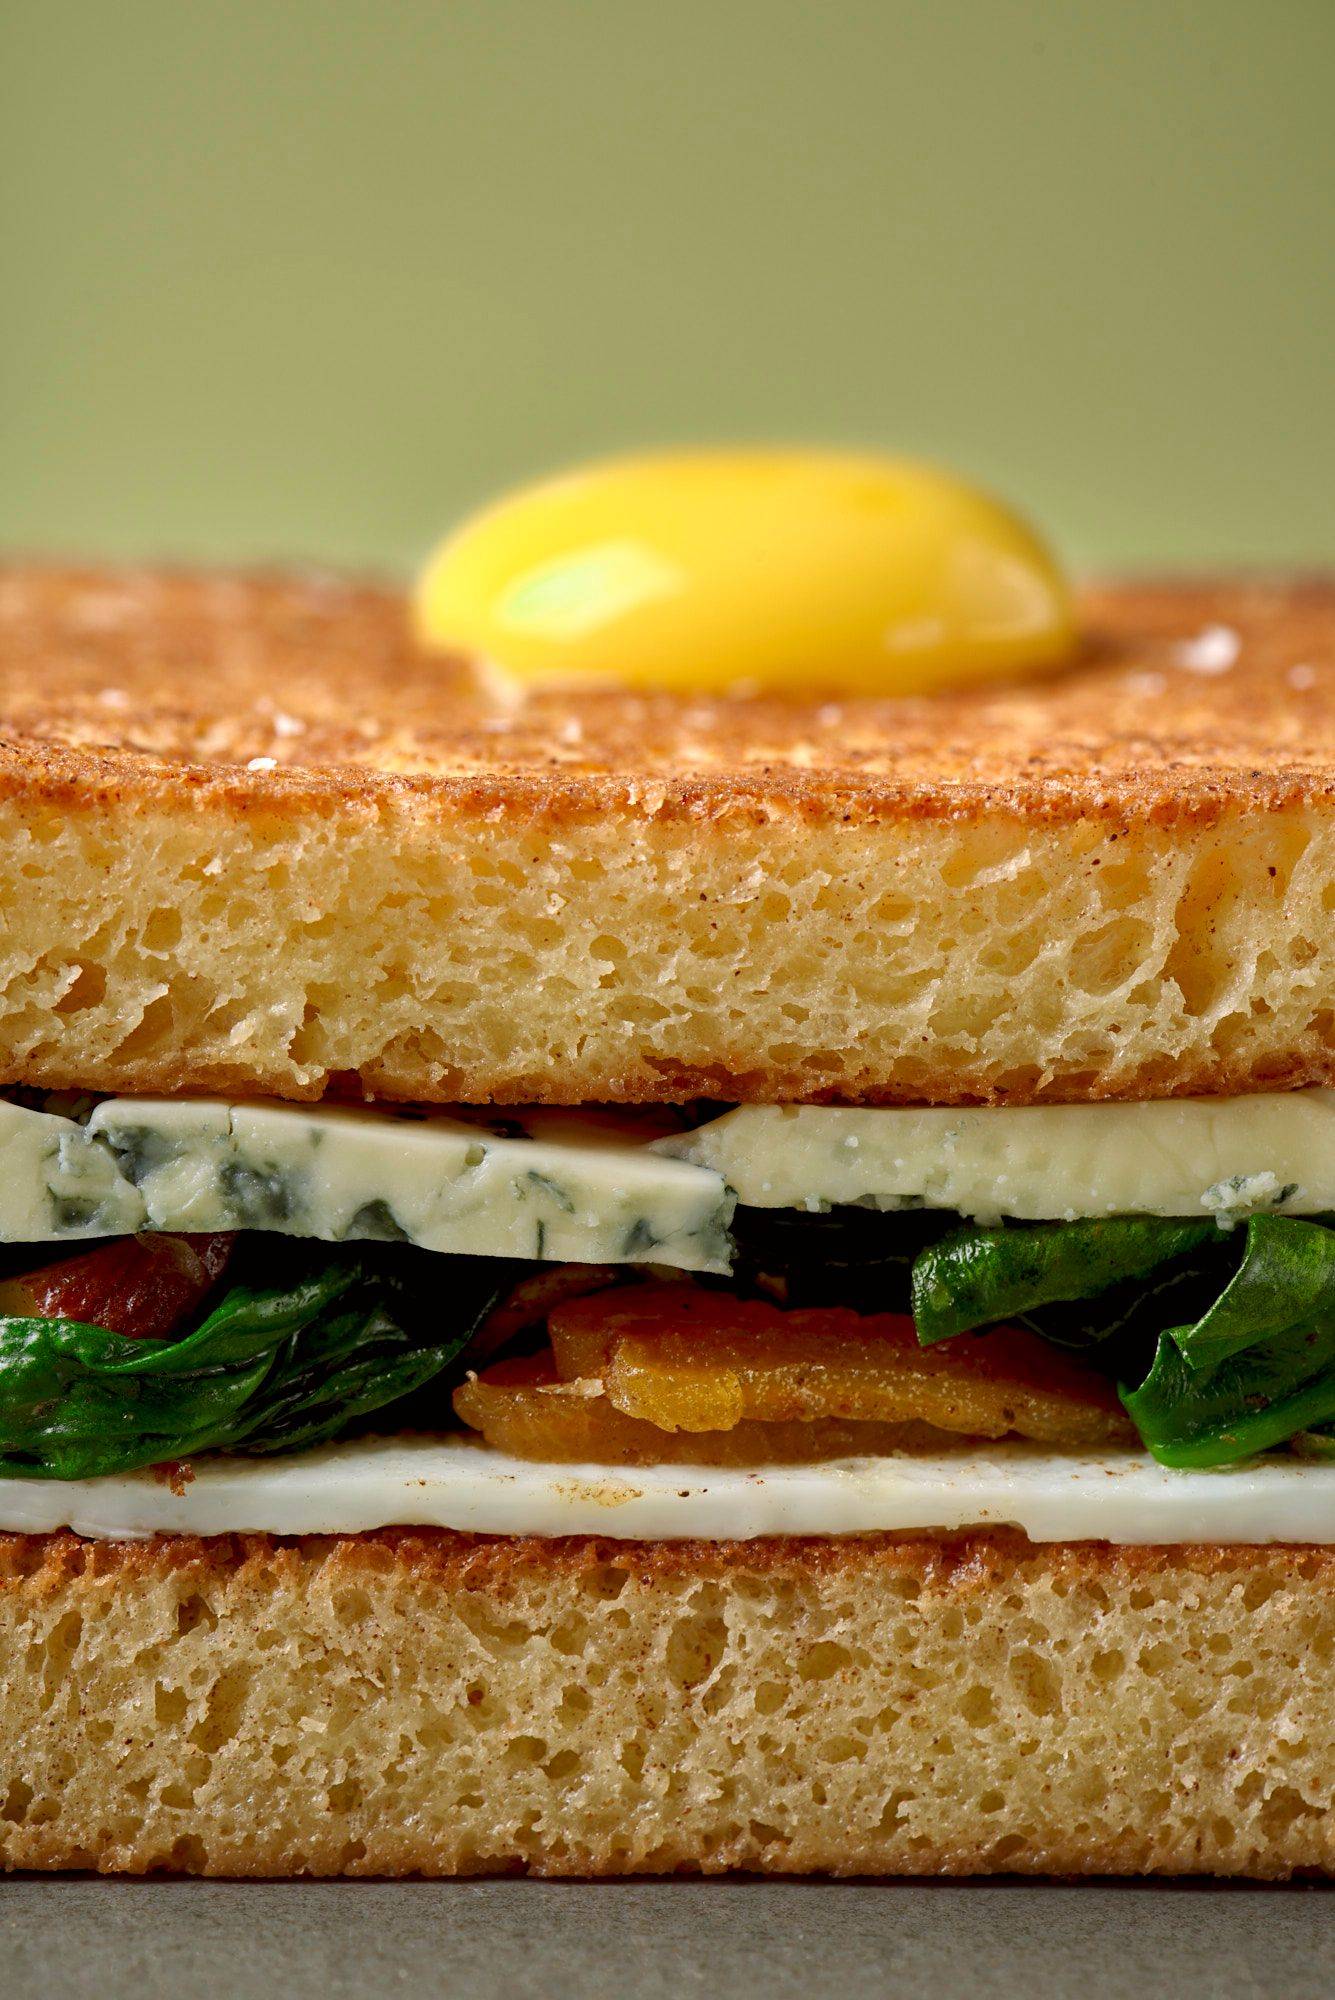 osterbrot sandwich auf grauem teller mit grünem hintergrund